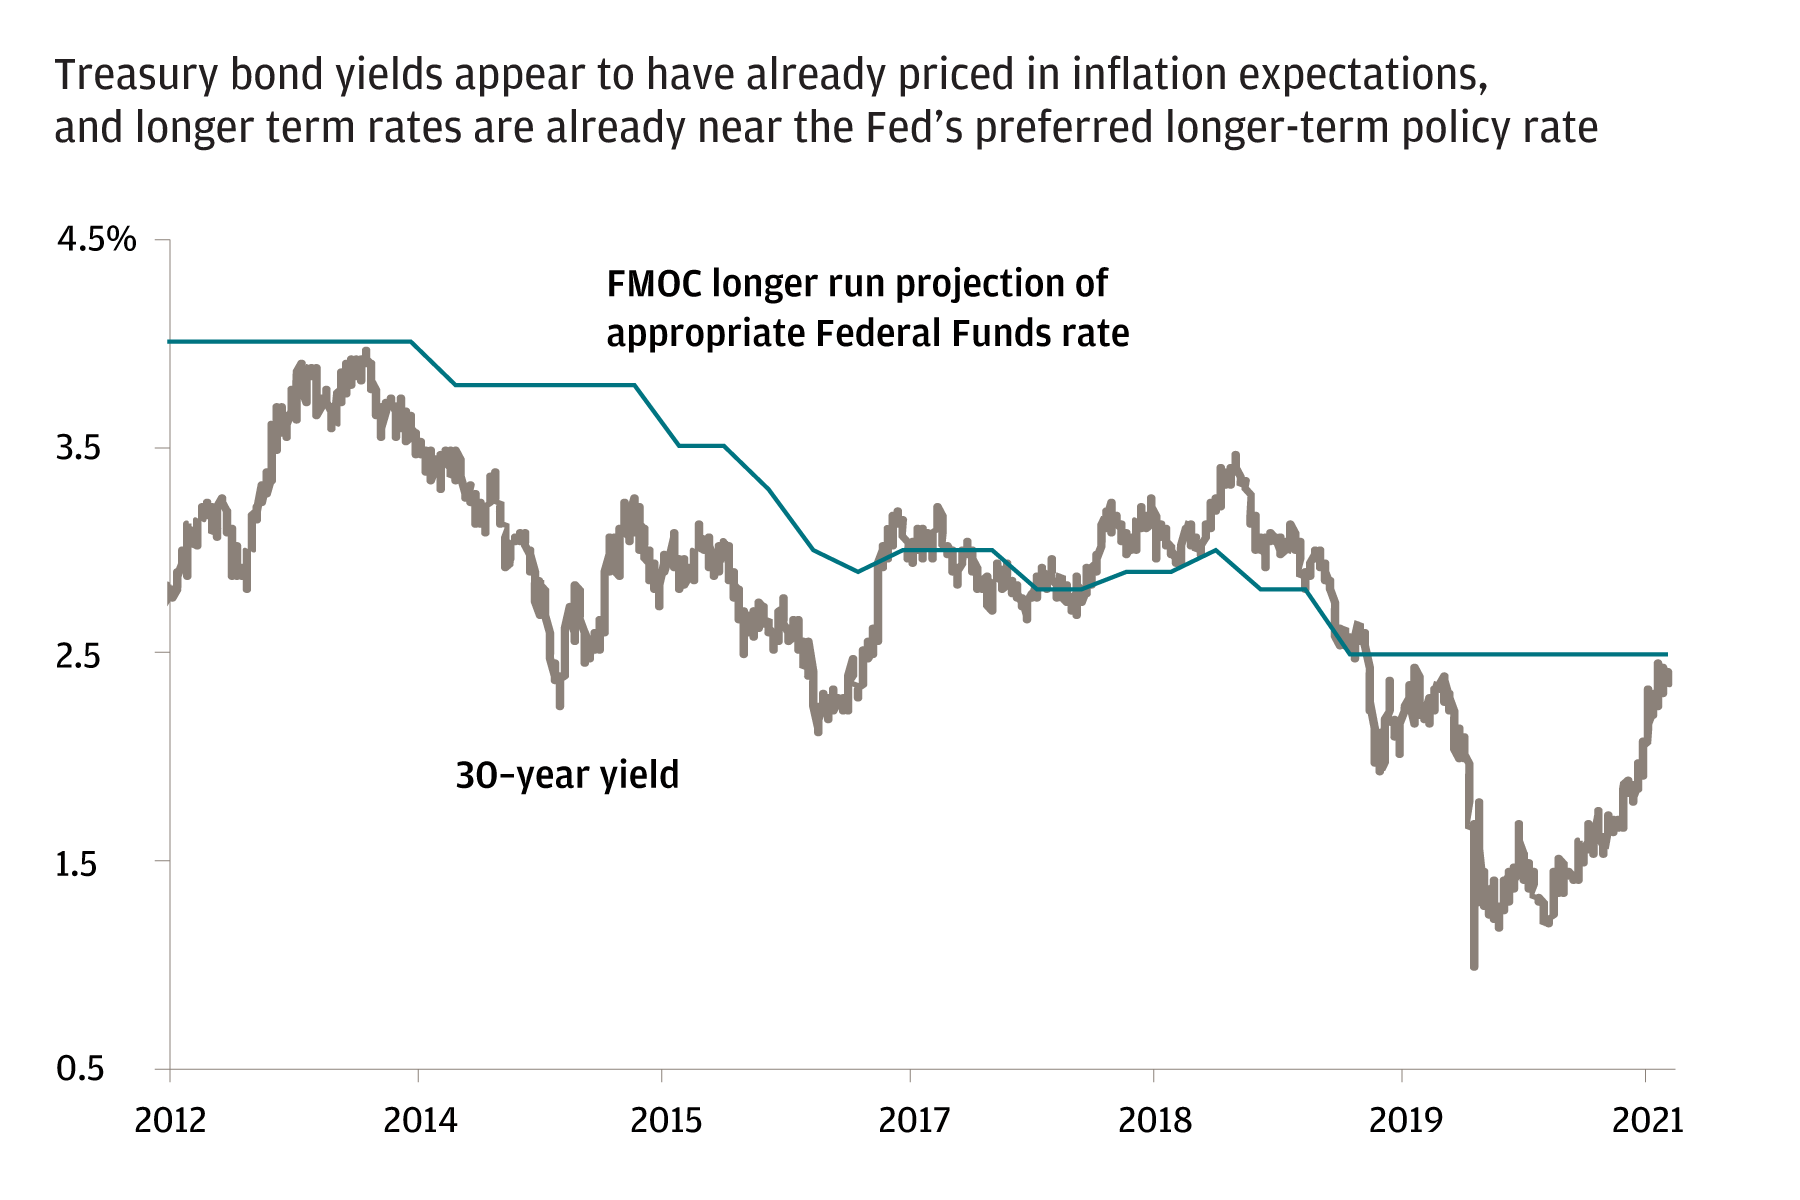 Los rendimientos de los bonos del Tesoro parecen haber incluido ya un precio en las expectativas de inflación y las tasas a largo plazo se están acercando a la preferida por la Reserva Federal